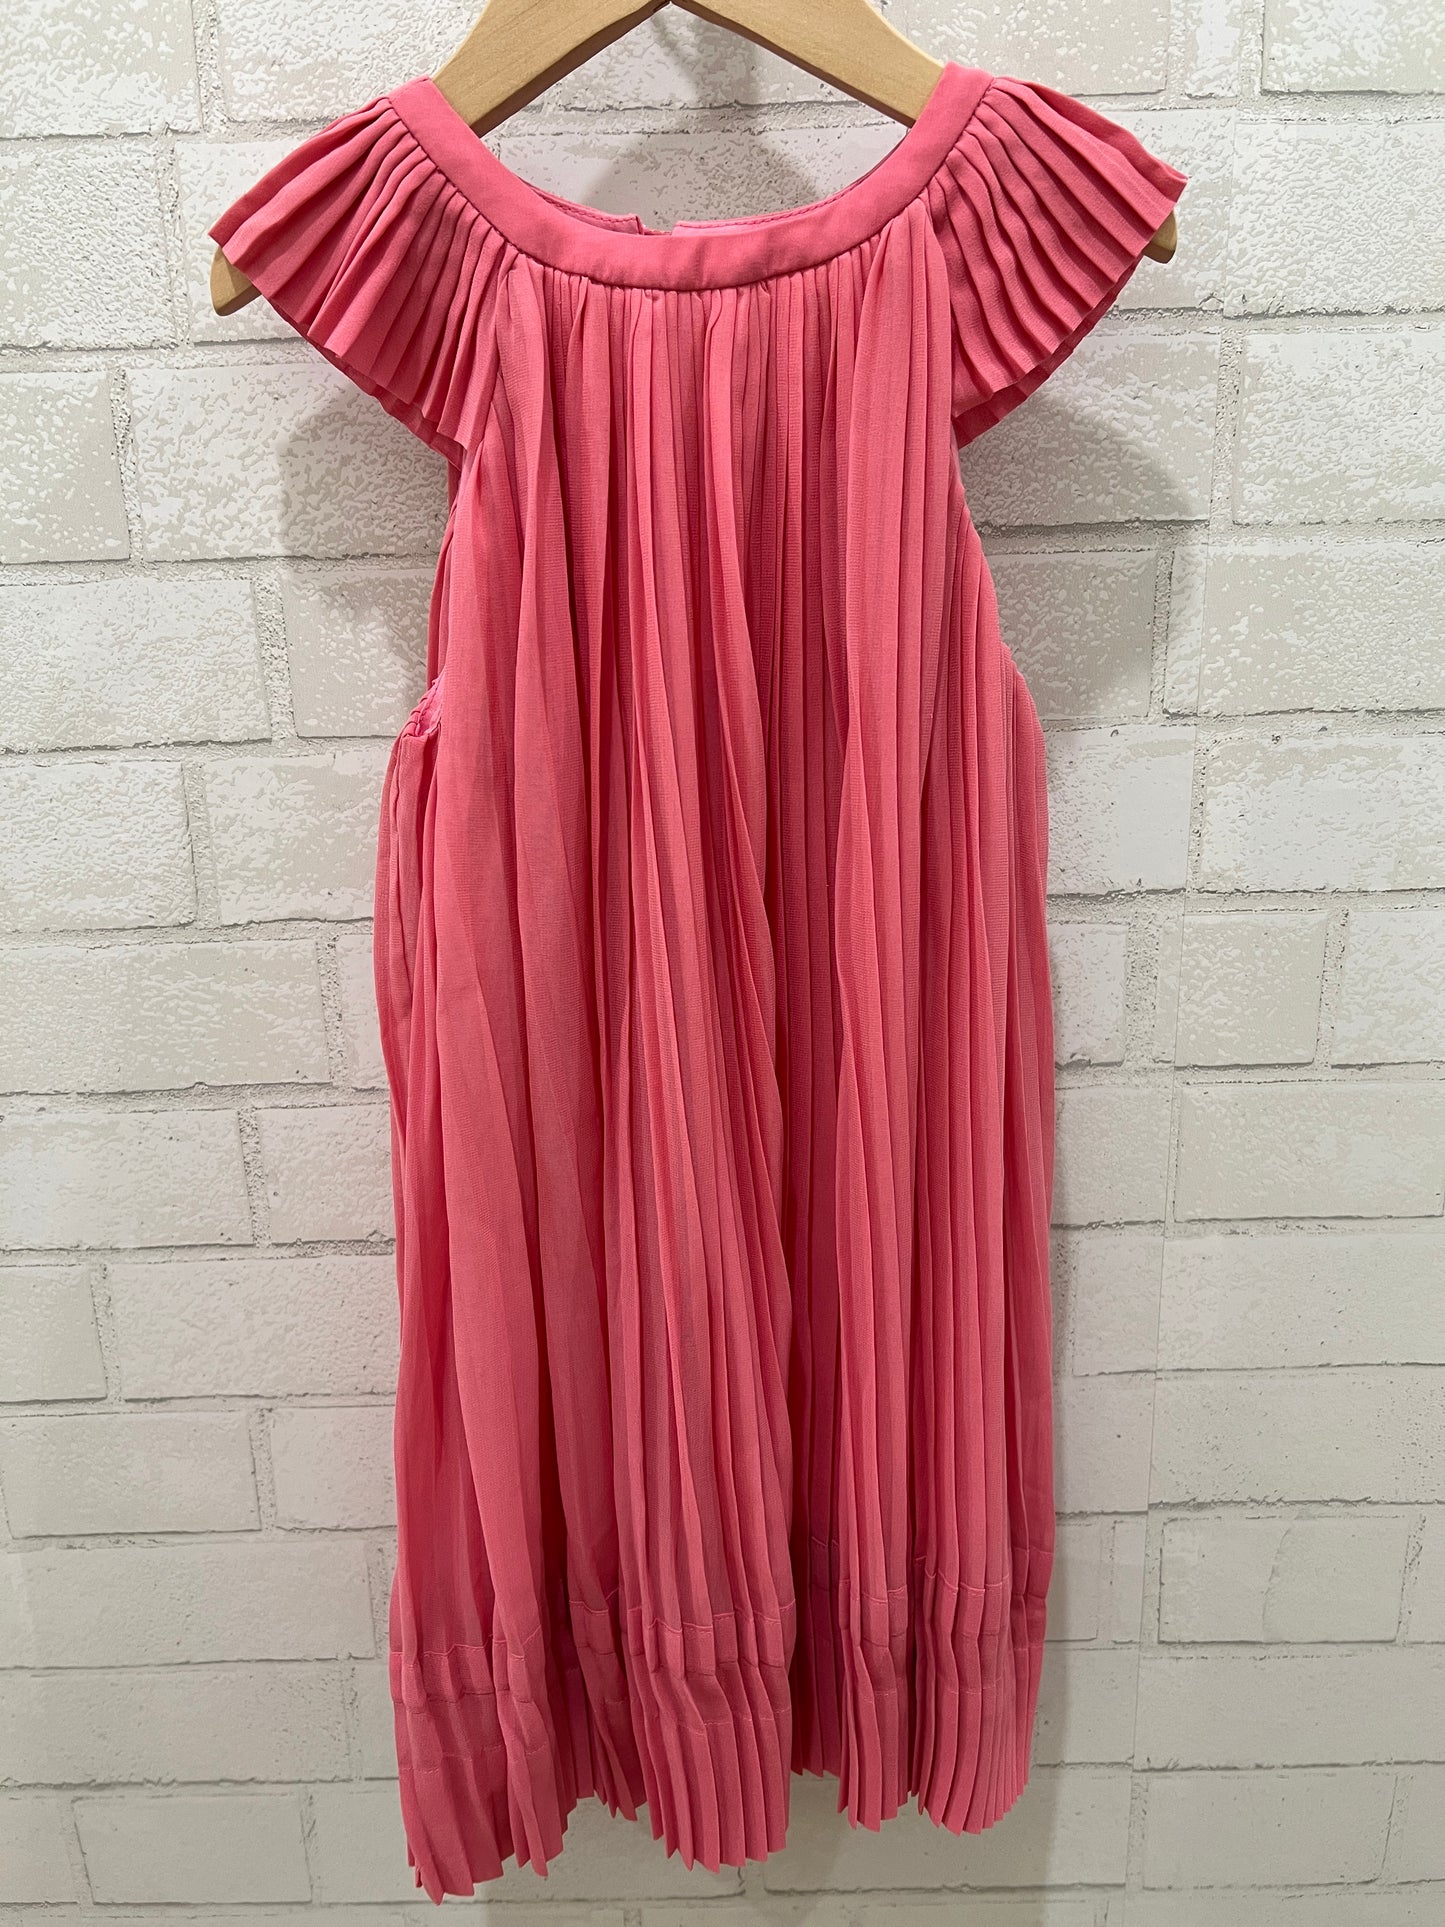 SEMSEM  mini pink dress NWT / 8Y